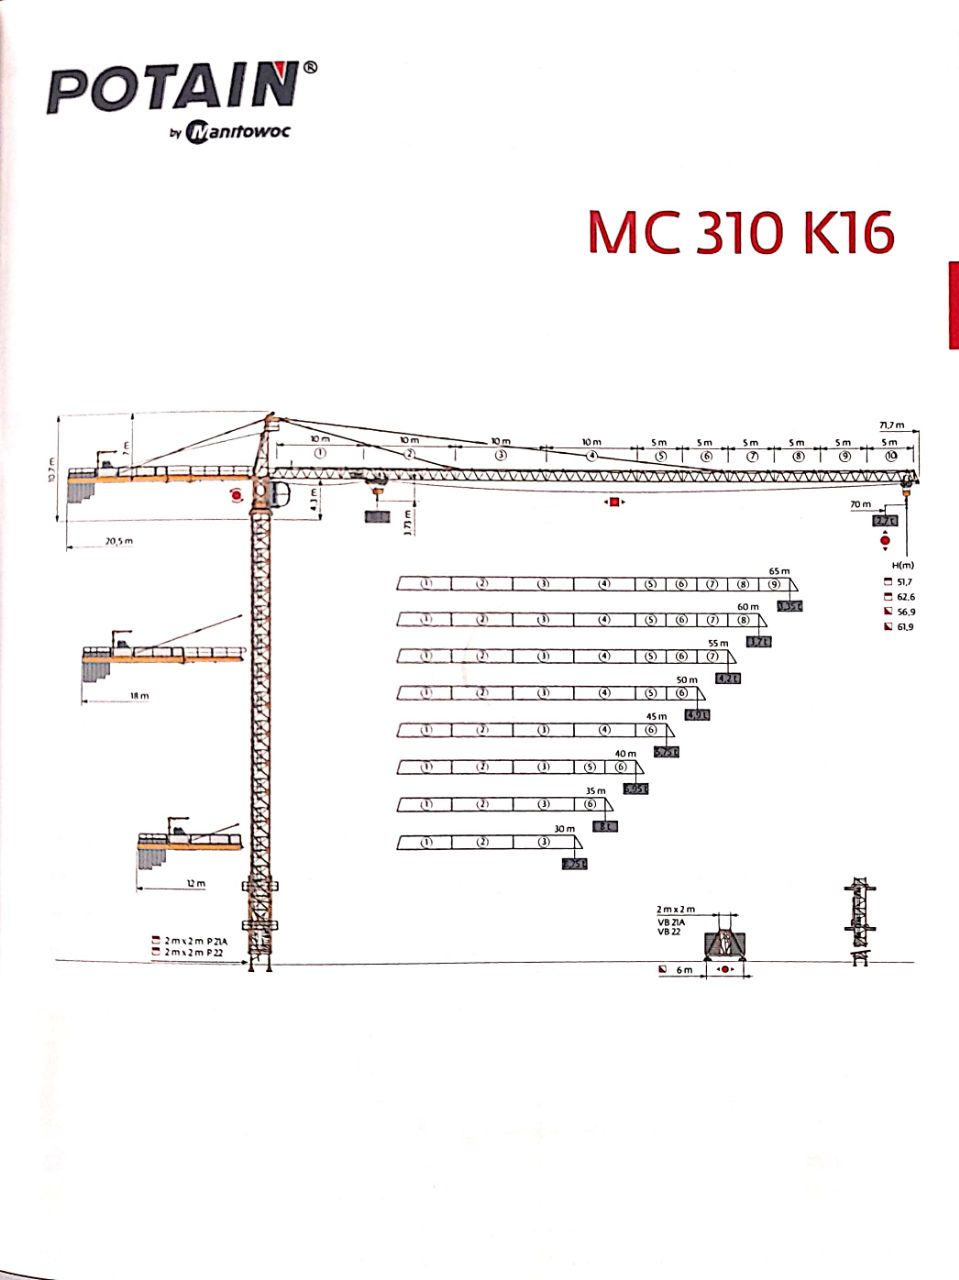 تاورکرین پتن MC-310 K16 potainتاورکرین پتن MC-310 K16 potainتاورکرین پتن MC-310 K16 potainتاورکرین پتن MC-310 K16 potainتاورکرین پتن MC-310 K16 potainتاورکرین پتن MC-310 K16 potain